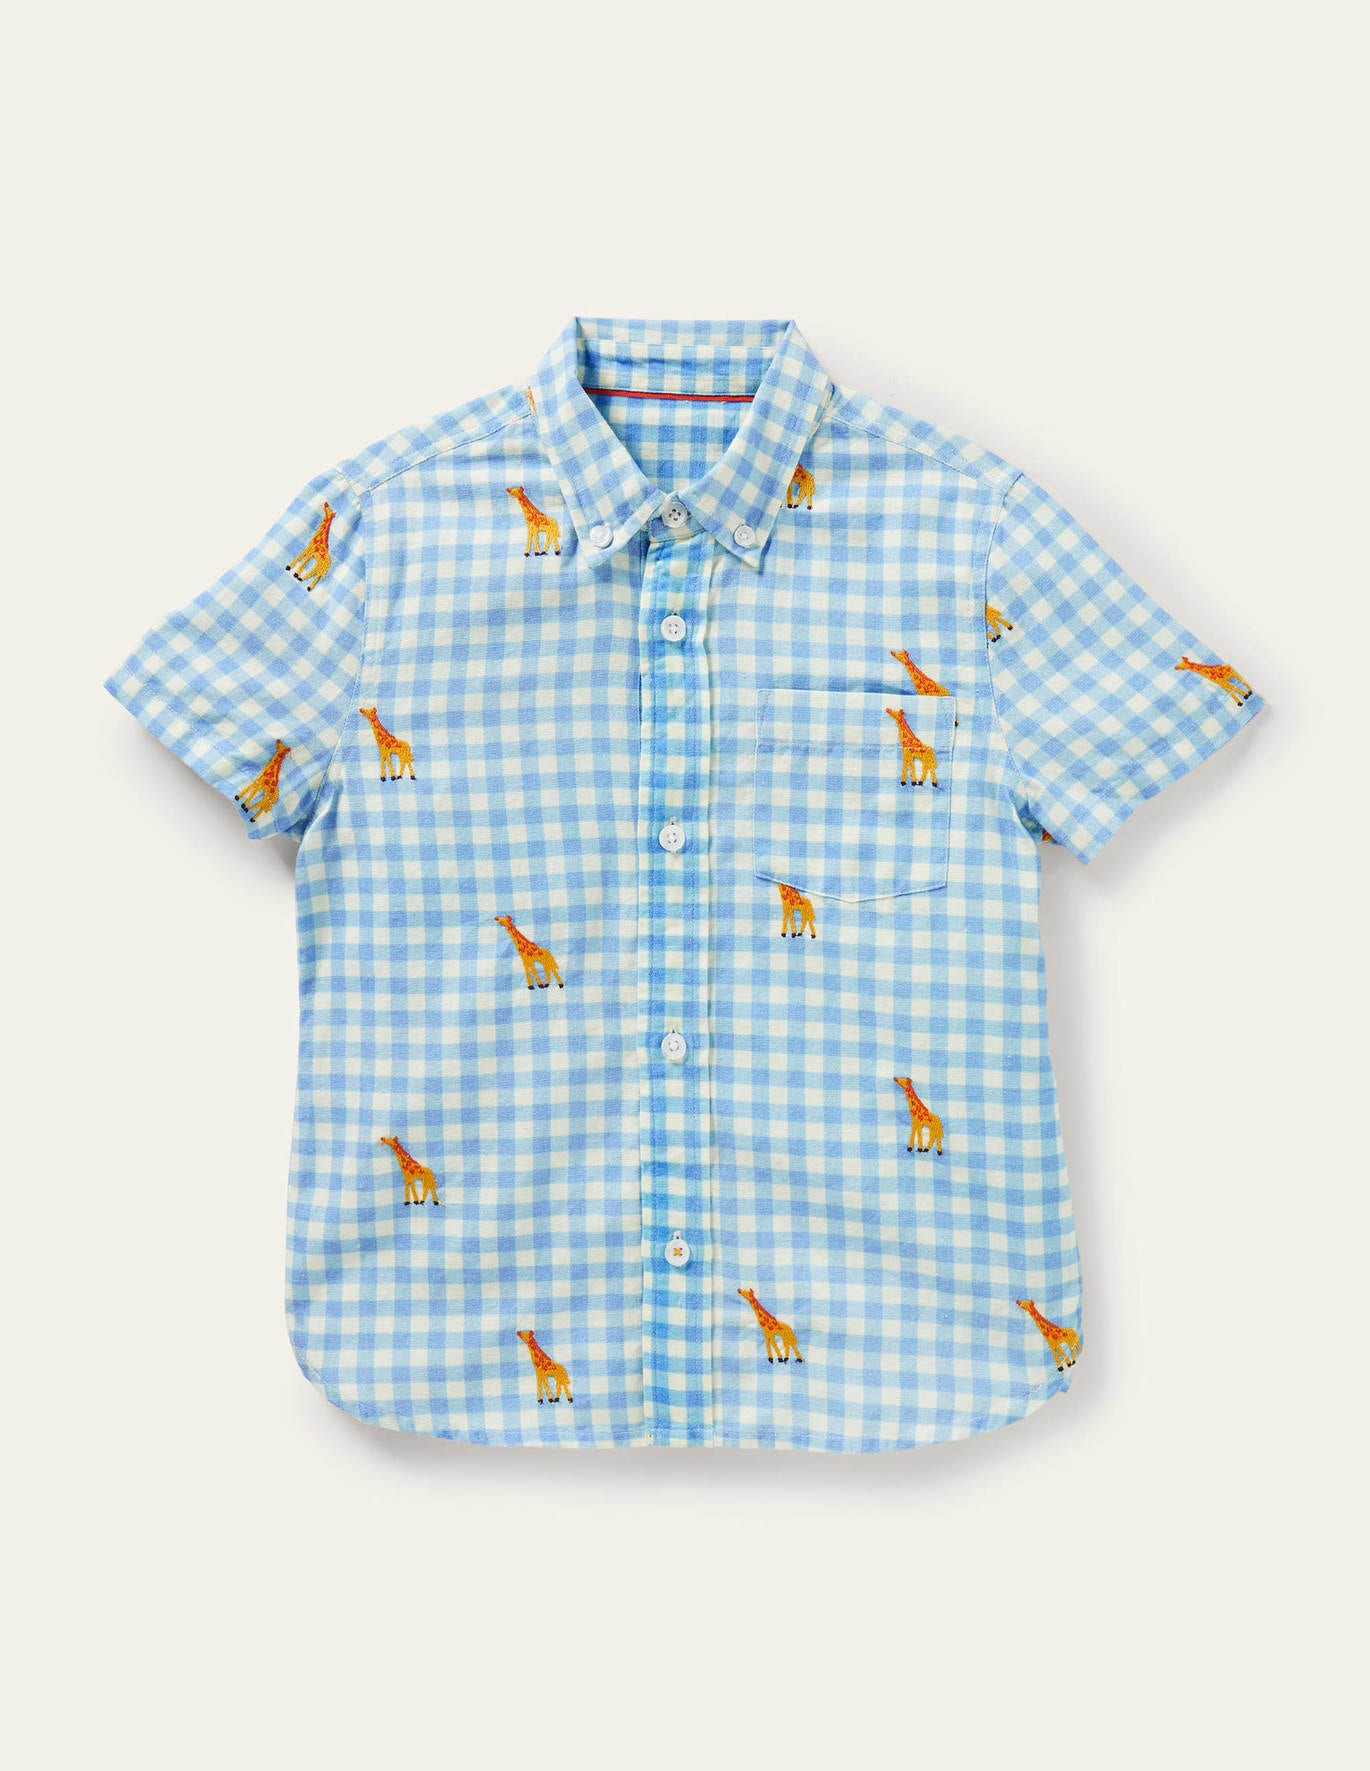 Boden Holiday Cotton Linen Shirt - Gingham Embroidered Giraffe